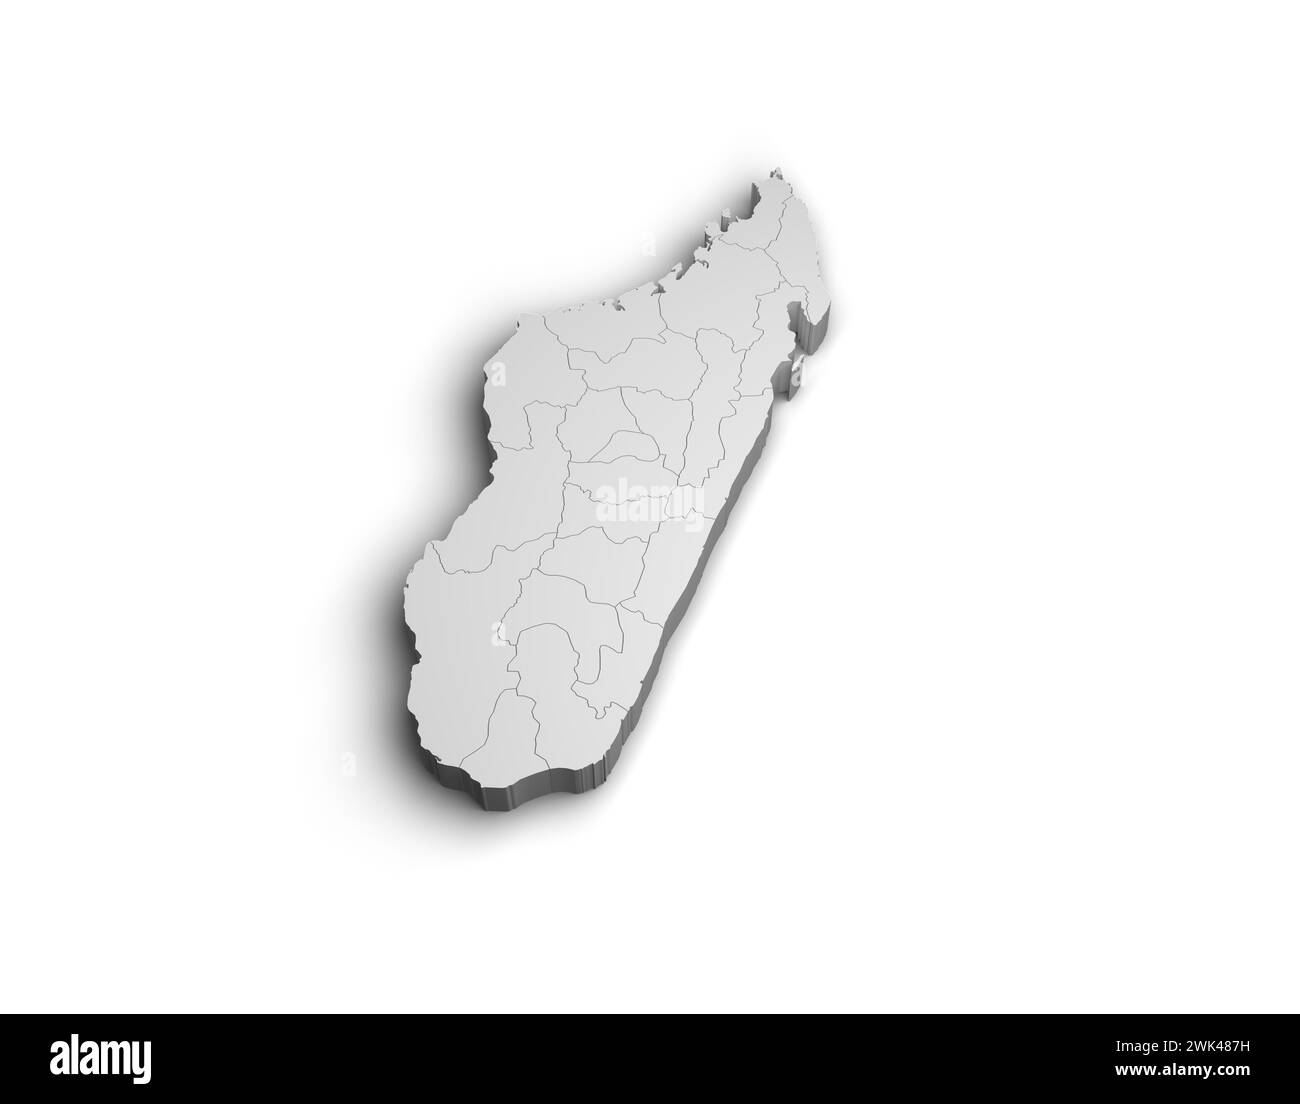 3d Madagascar map illustration white background isolate Stock Photo